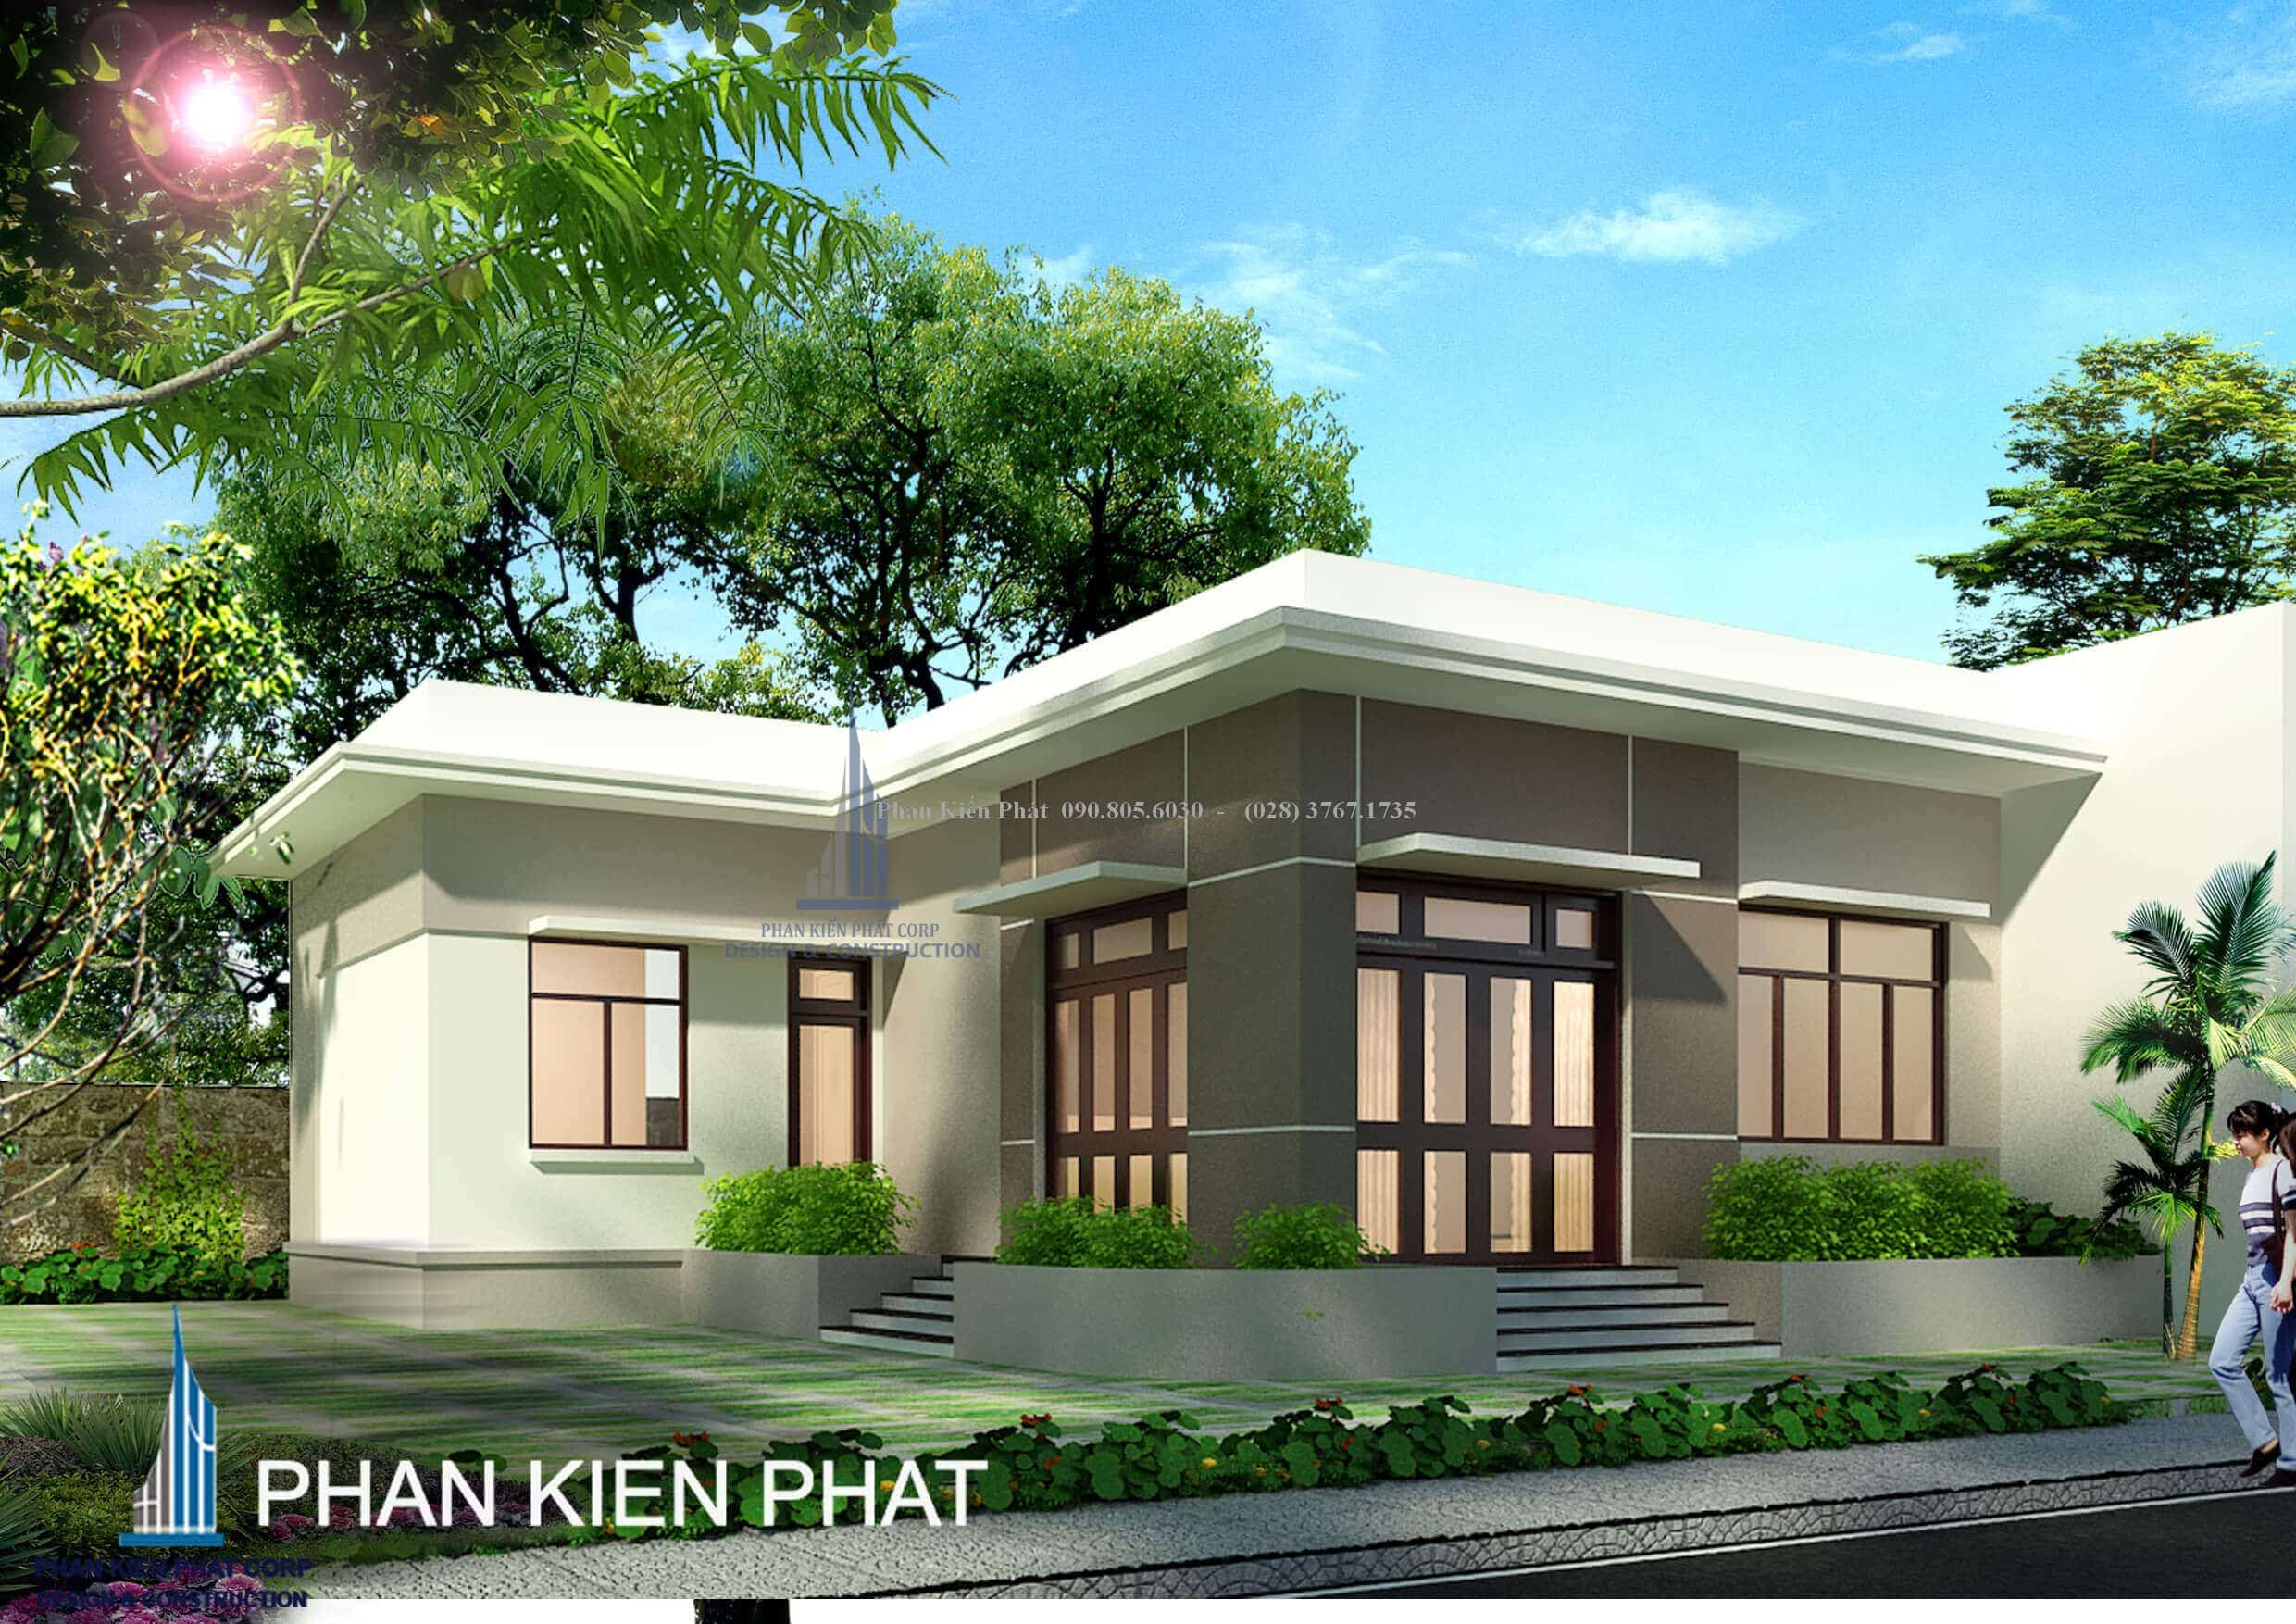 Thiết kế biệt thự nhà vườn 1 tầng 4 phòng ngủ trên diện tích đất 15x30m -  Trangkim